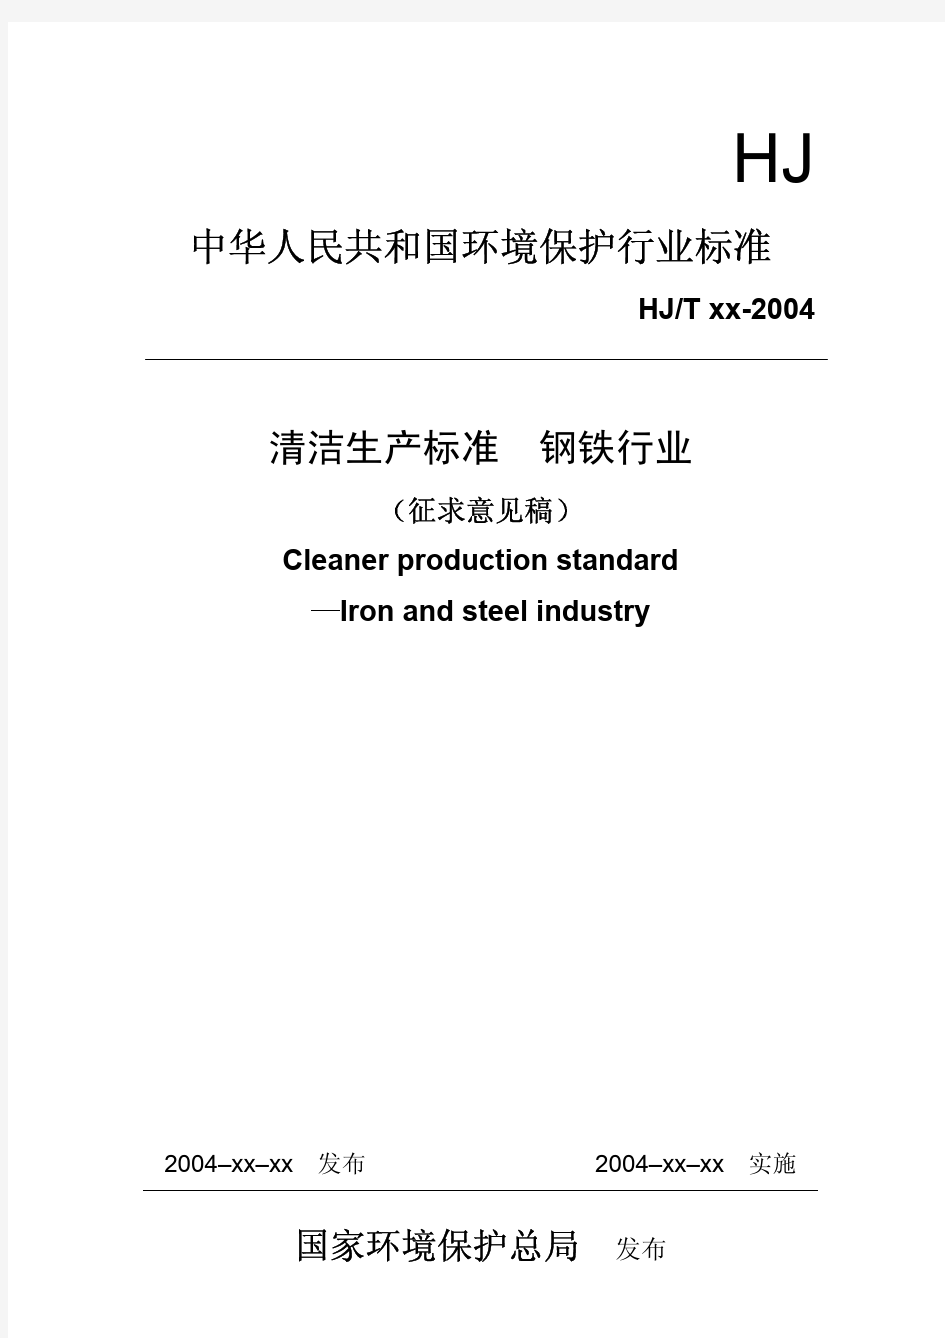 钢铁行业清洁生产标准